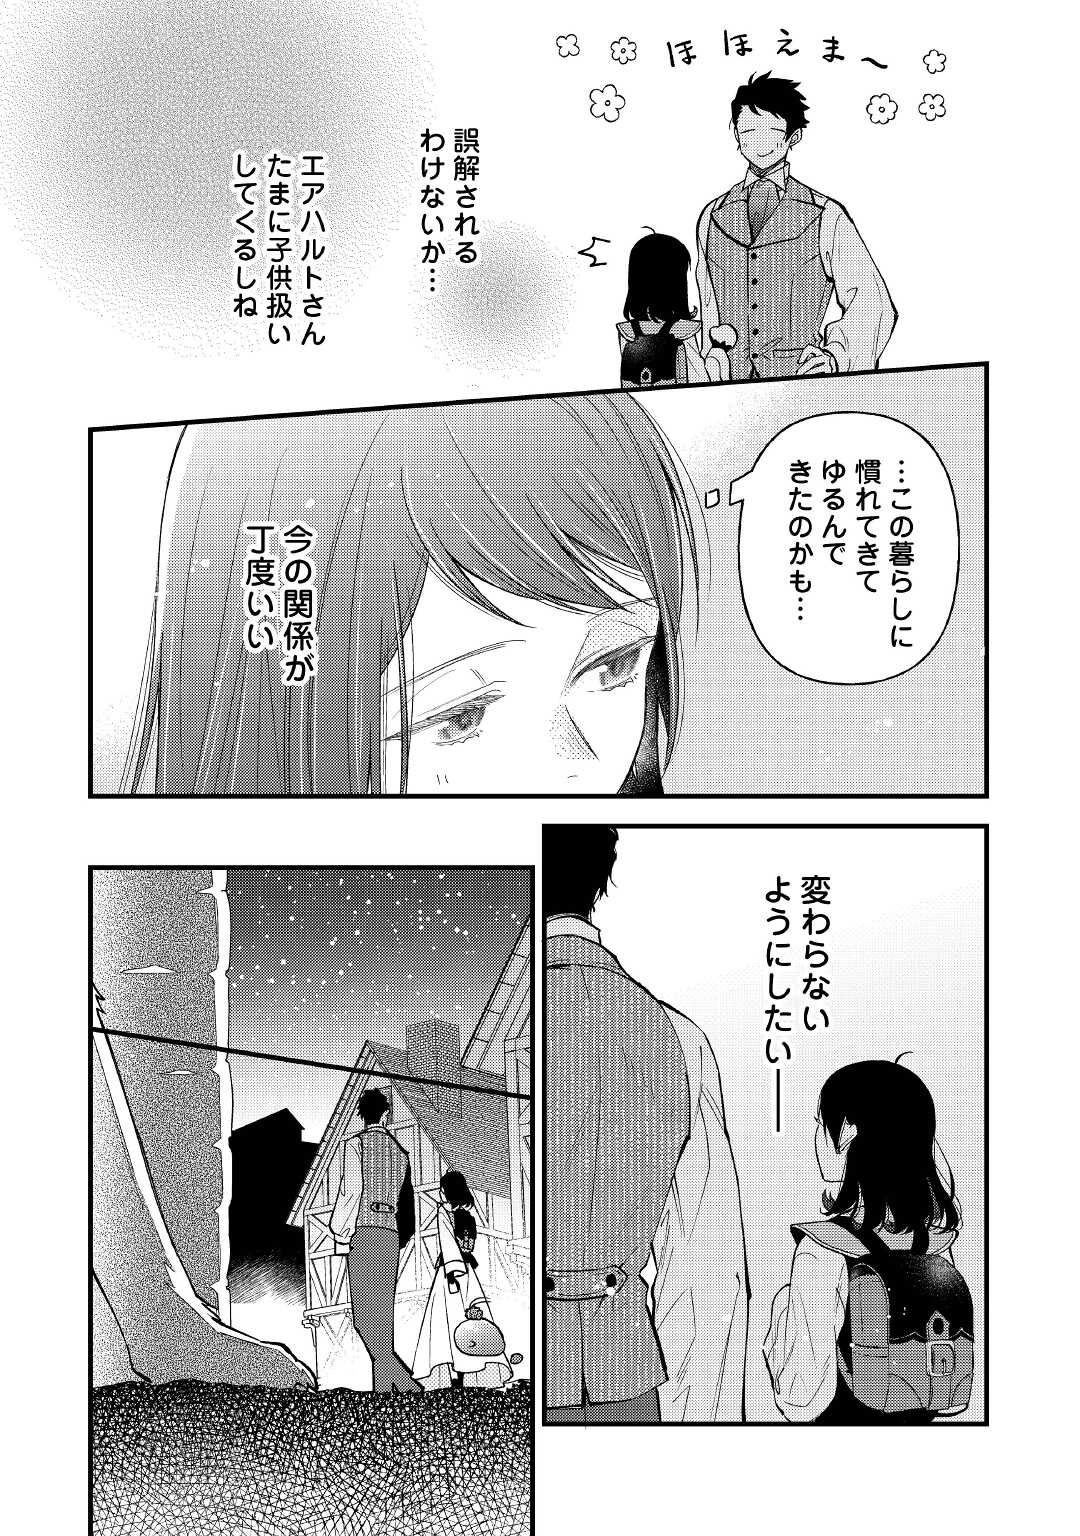 Tenisaki wa Kusushi ga Sukunai Sekai Deshita - Chapter 19.1 - Page 2